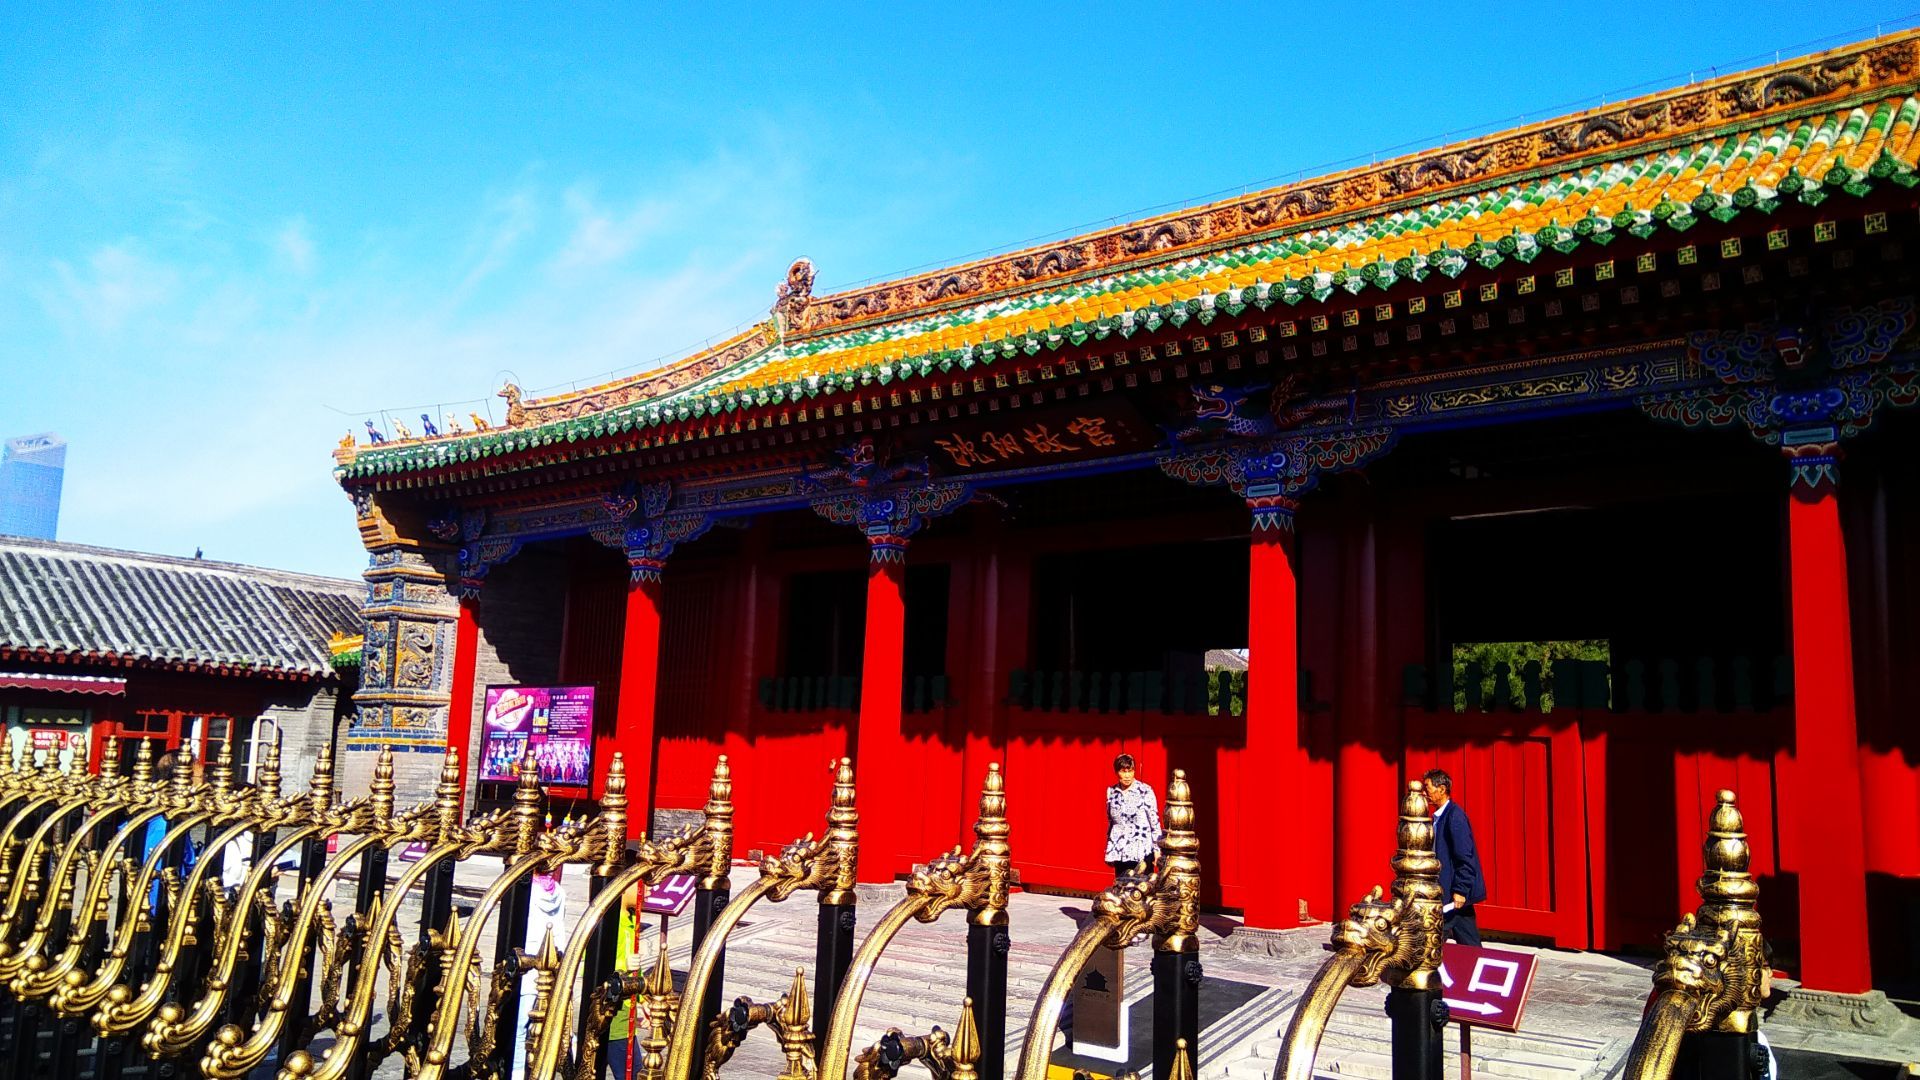 【携程攻略】北京午门景点,午门是故宫的正门俗称五凤楼，位于紫禁城南北轴线。门居中向阳，位当…